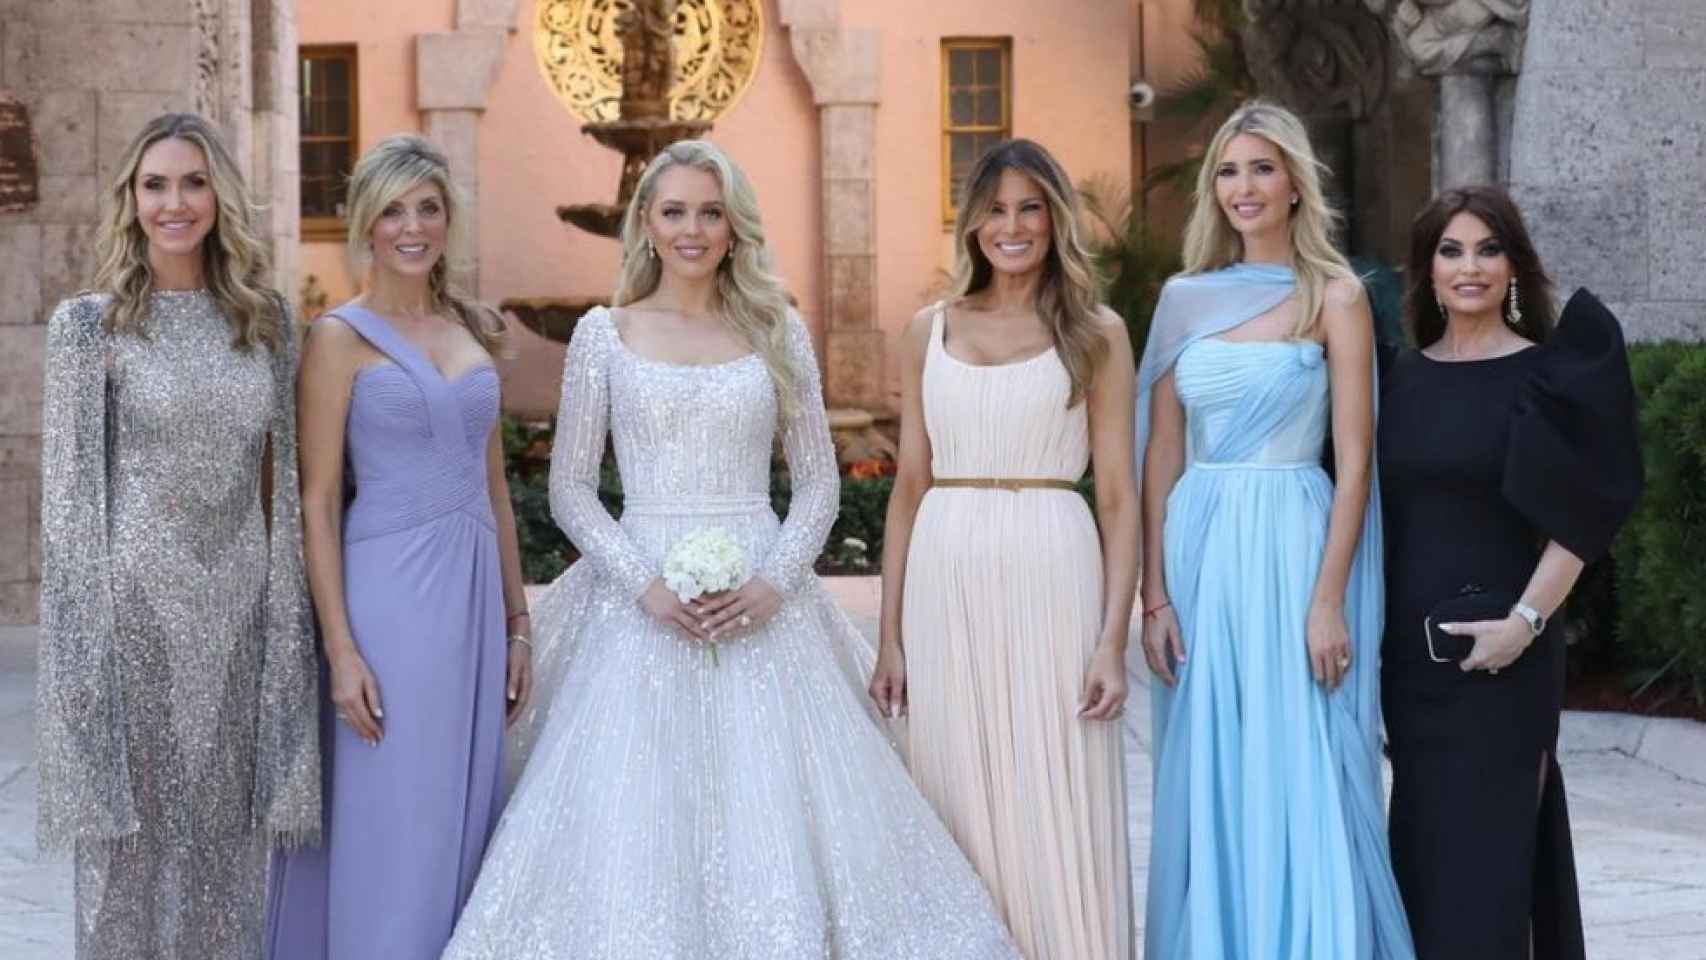 Tiffany Trump acompañada en la imagen por sus damas de honor y la mujer de su padre, Melania Trump.